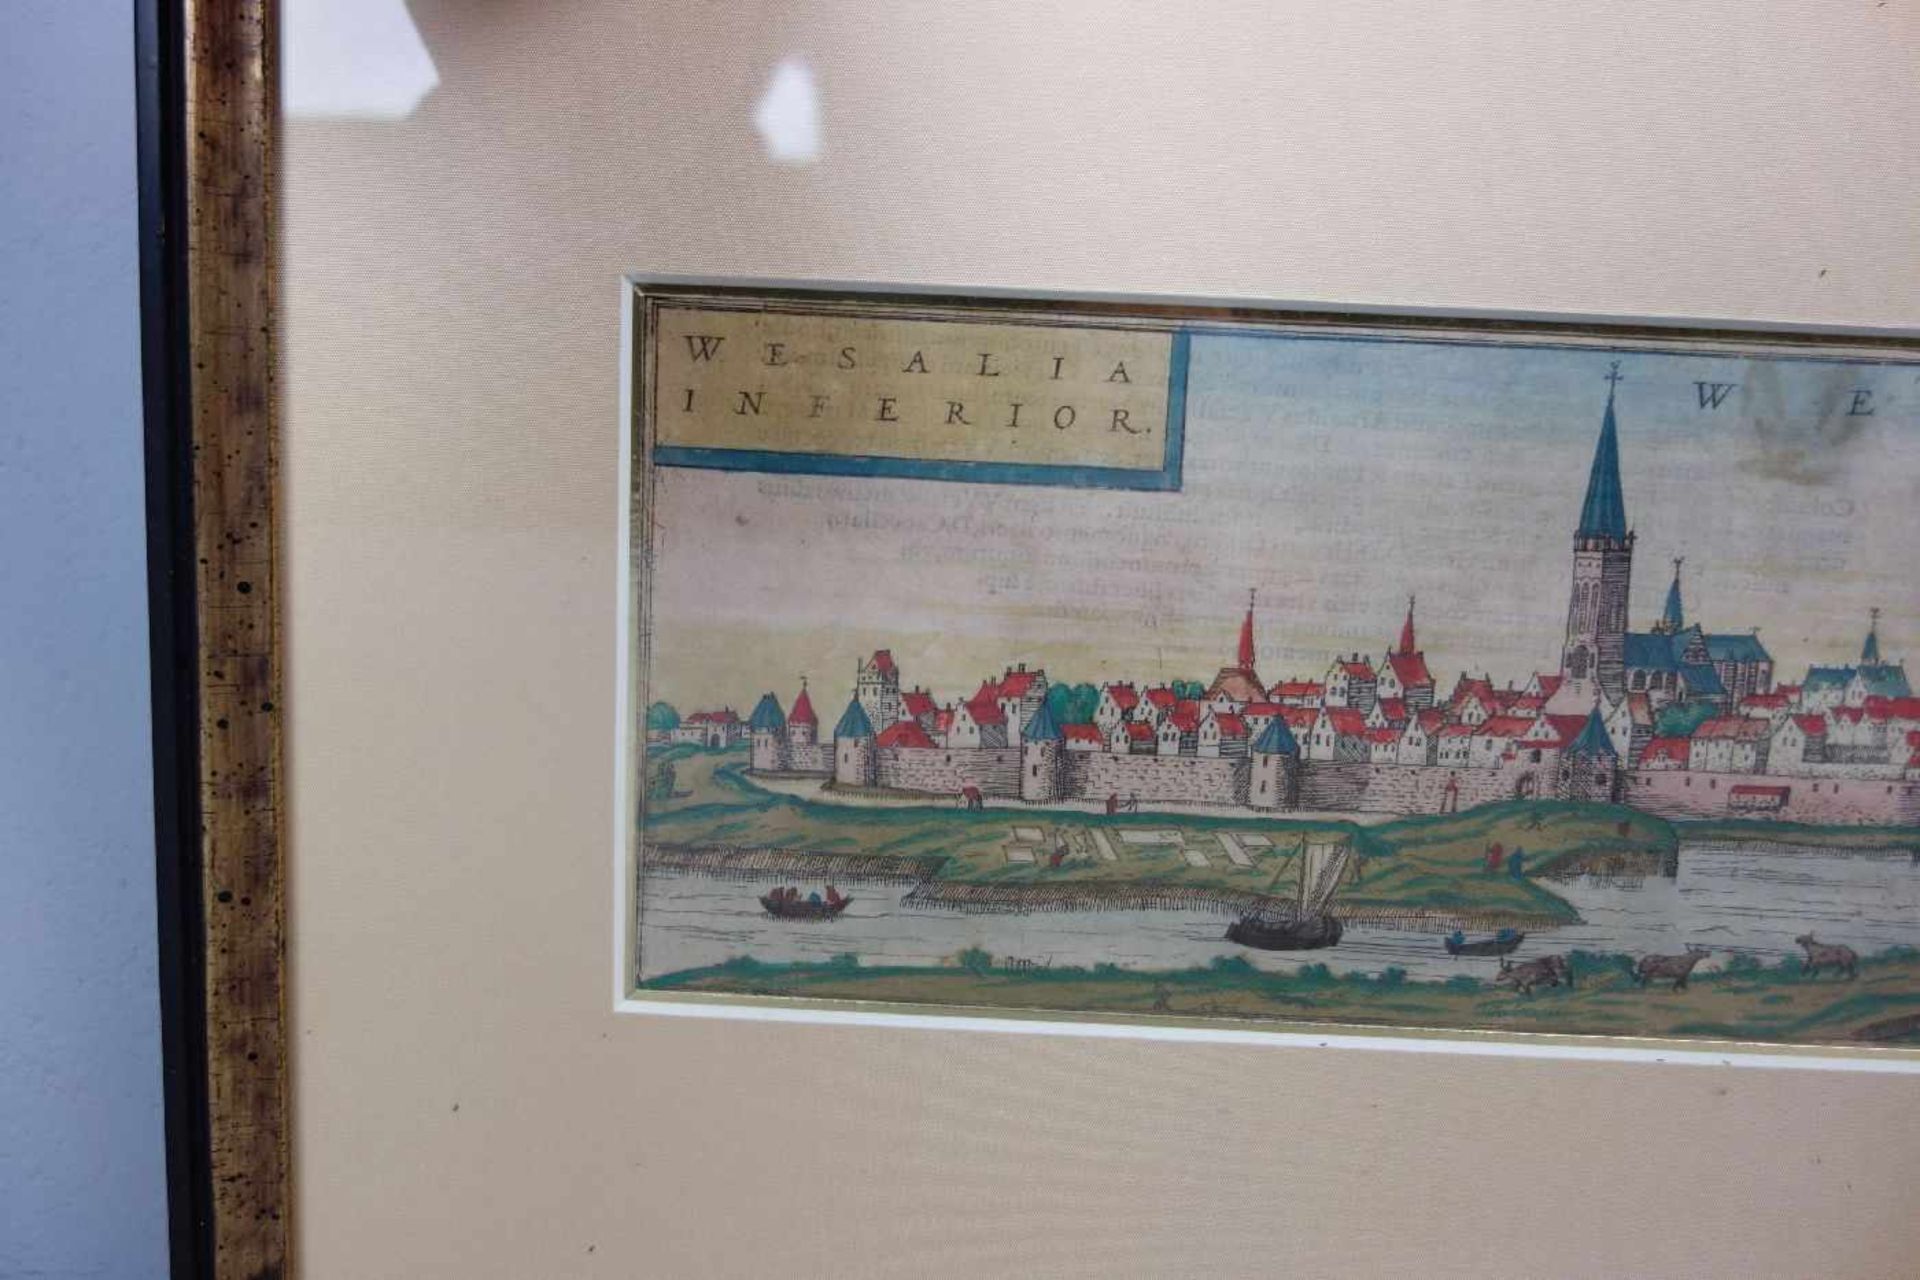 KOLORIERTER KUPFERSTICH WESEL, Ansicht der Stadt Wesel mit Titelkartusche "WESALIA INFERIOR"; aus - Bild 2 aus 4